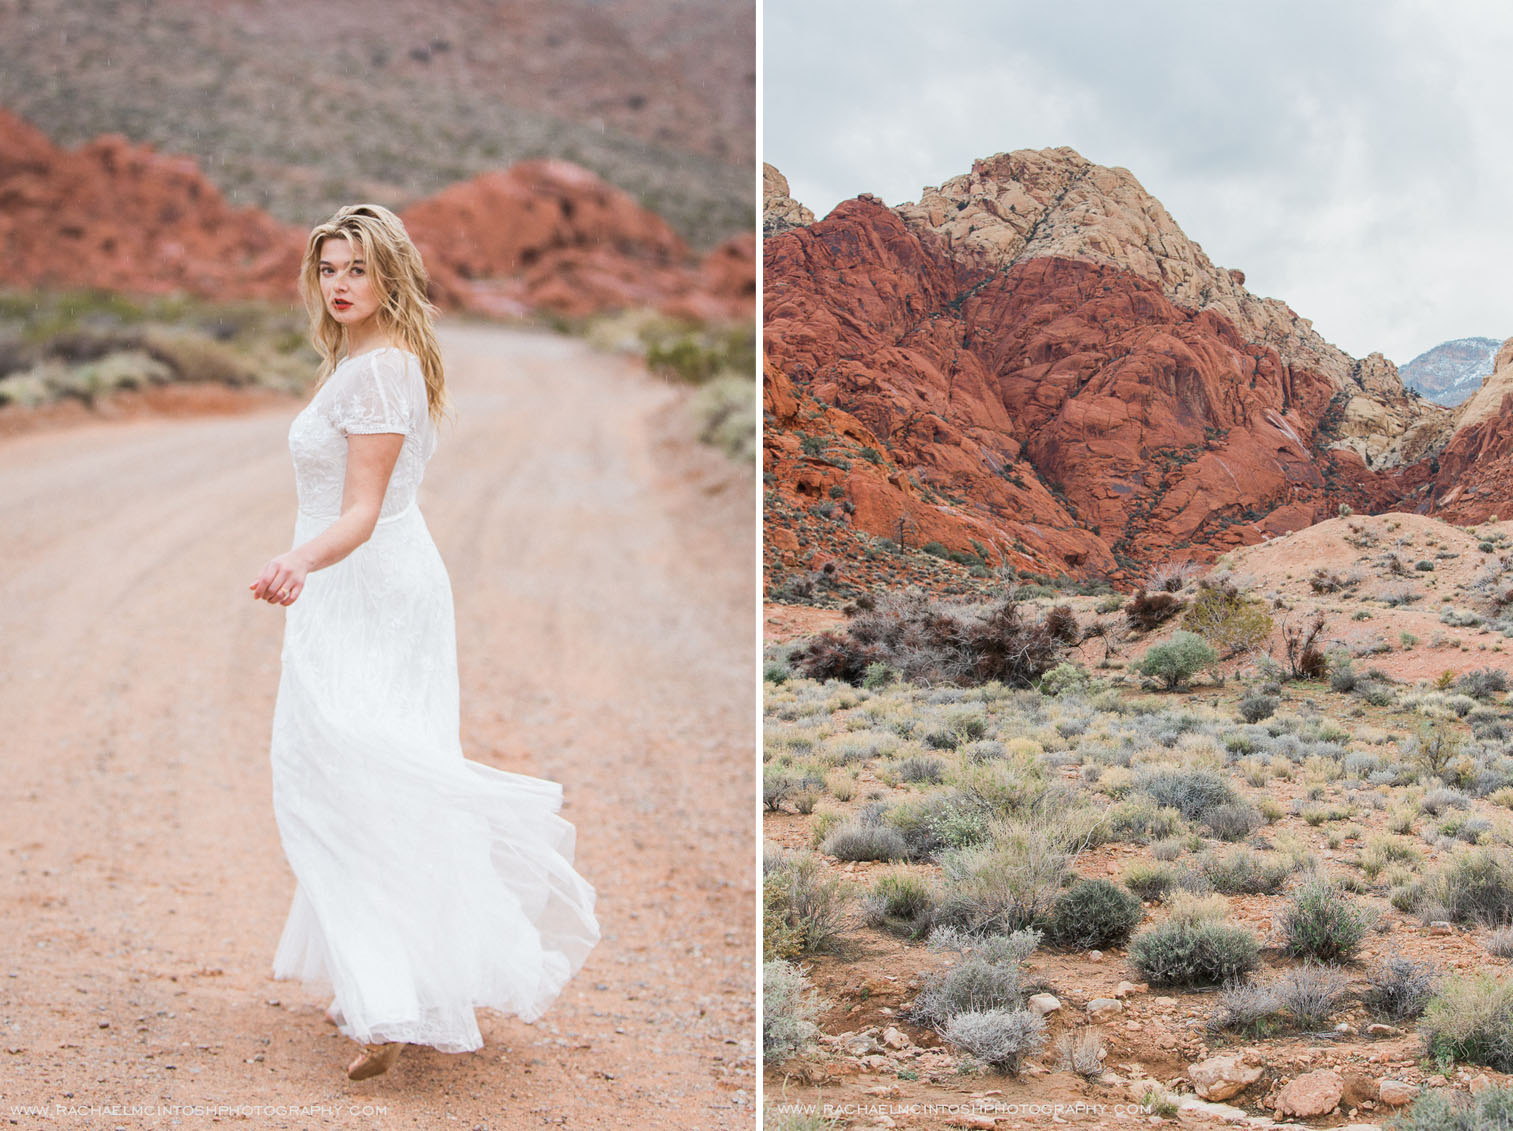 Khrystyana-styled-shoot-desert-wedding-36.jpg